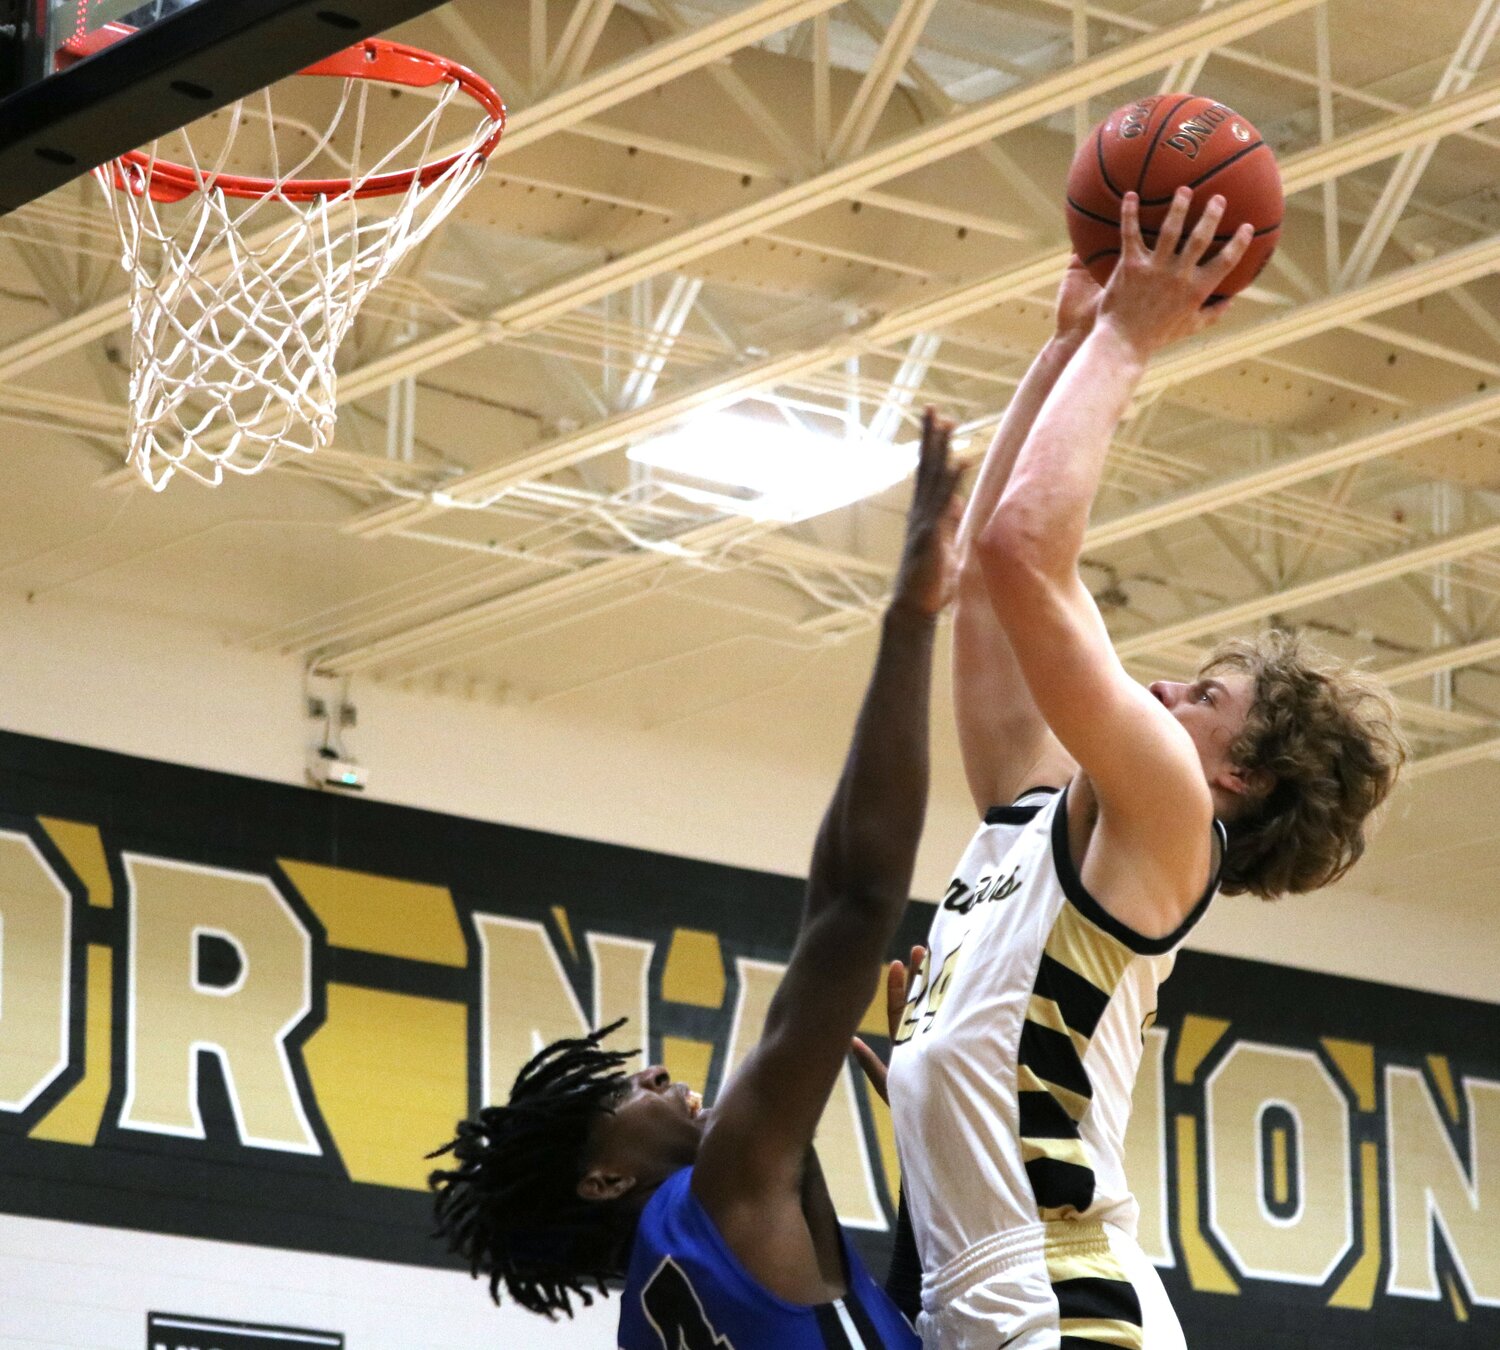 Landon Kjar goes up for a basket over a defender during Friday's game between Jordan and Westside at the Jordan gym.